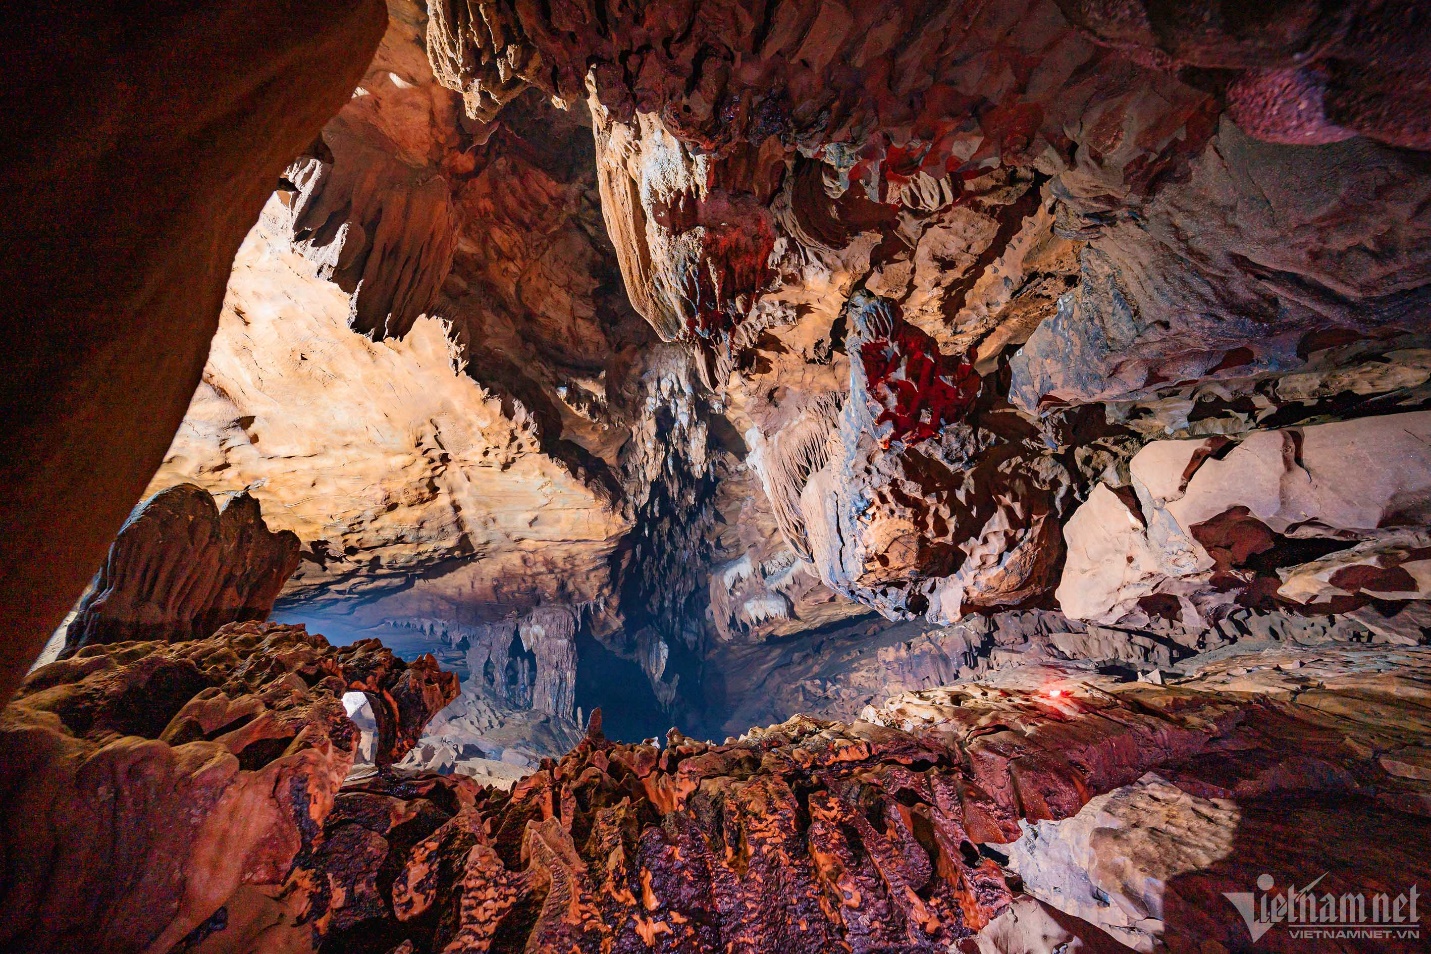 Ngắm nghìn thạch nhũ lạ mắt trong hang Bó Mỳ, điểm đến mới tuyệt đẹp ở Hà Giang - 12